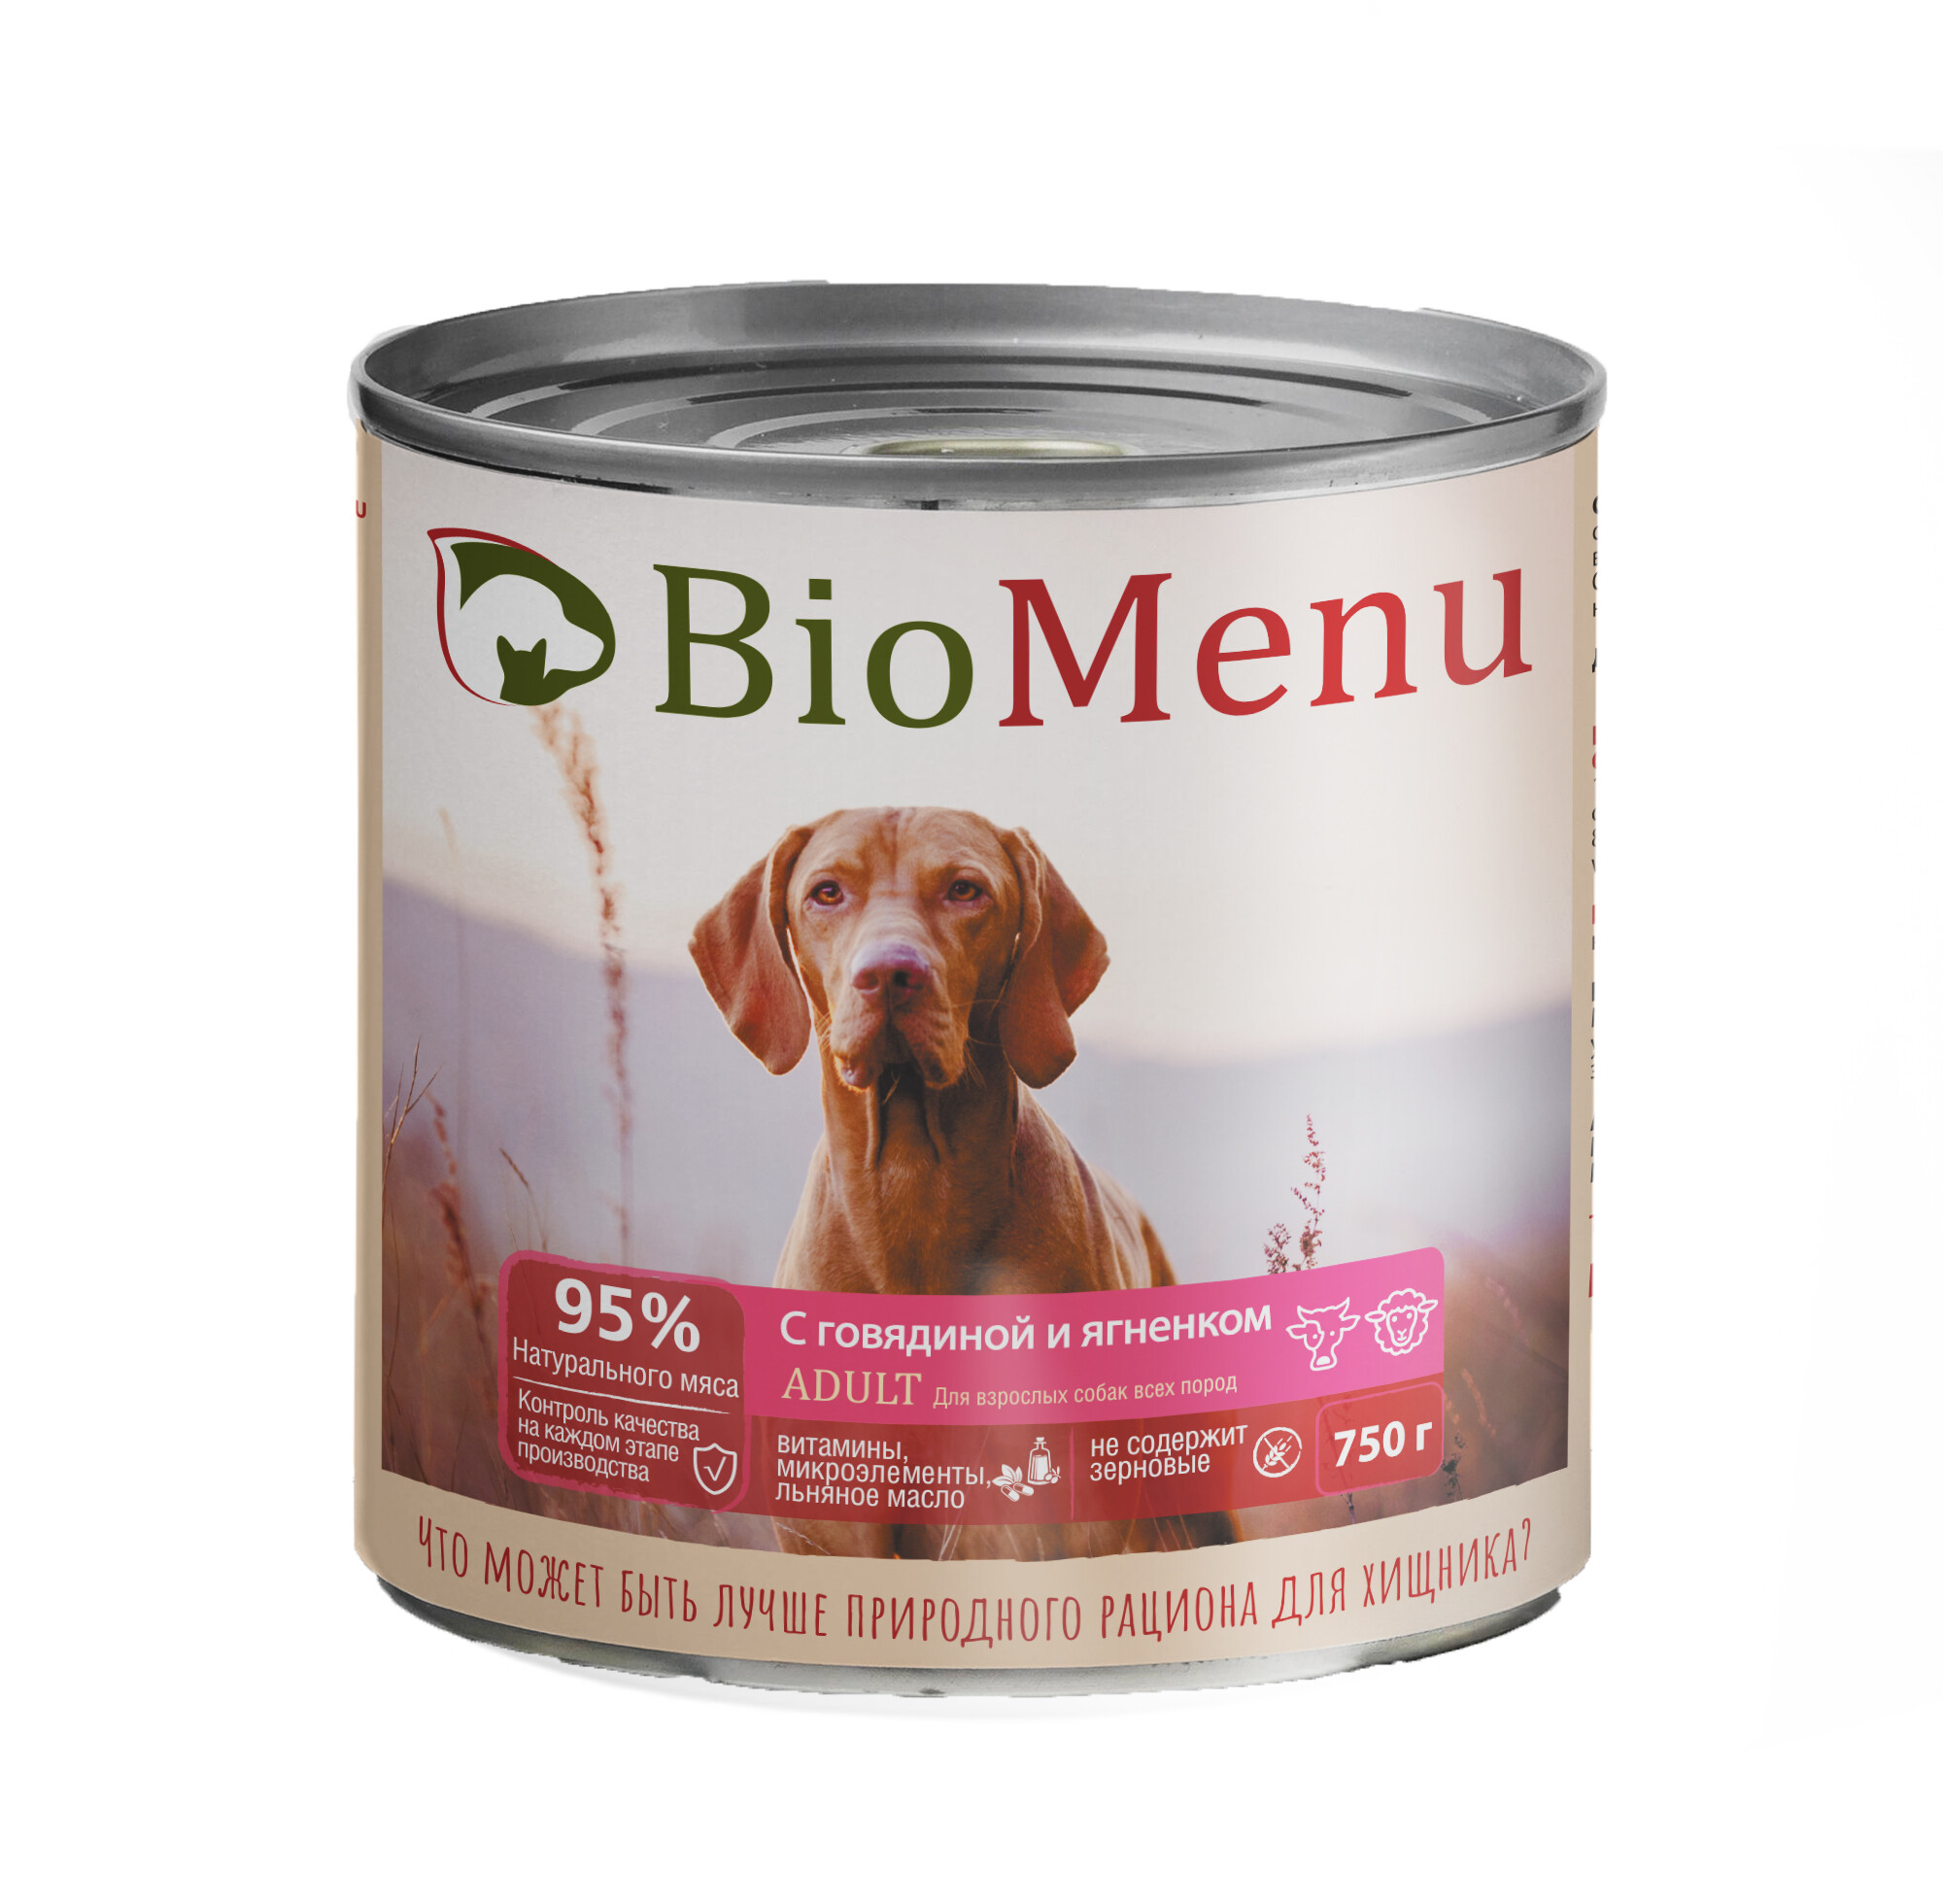 Консервы для собак BioMenu, мясо, 750г